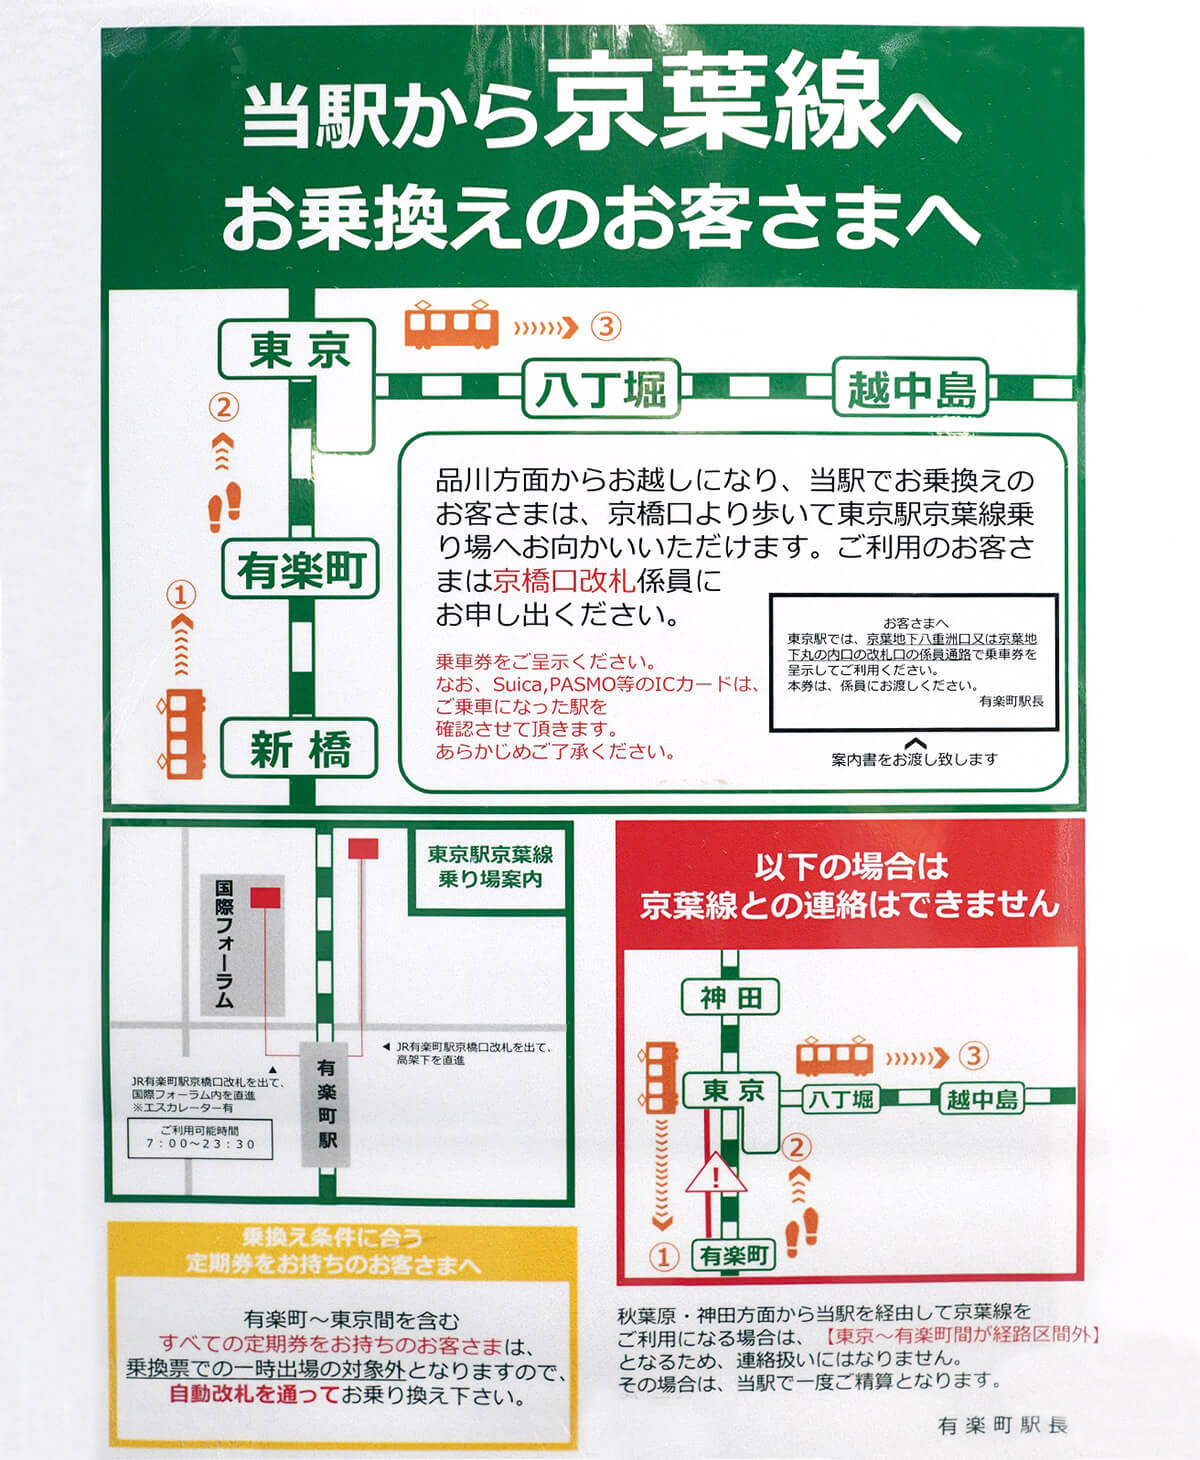 【4】JR「有楽町駅」からJR「東京駅」京葉線のホームに乗り換える裏ワザがあった！